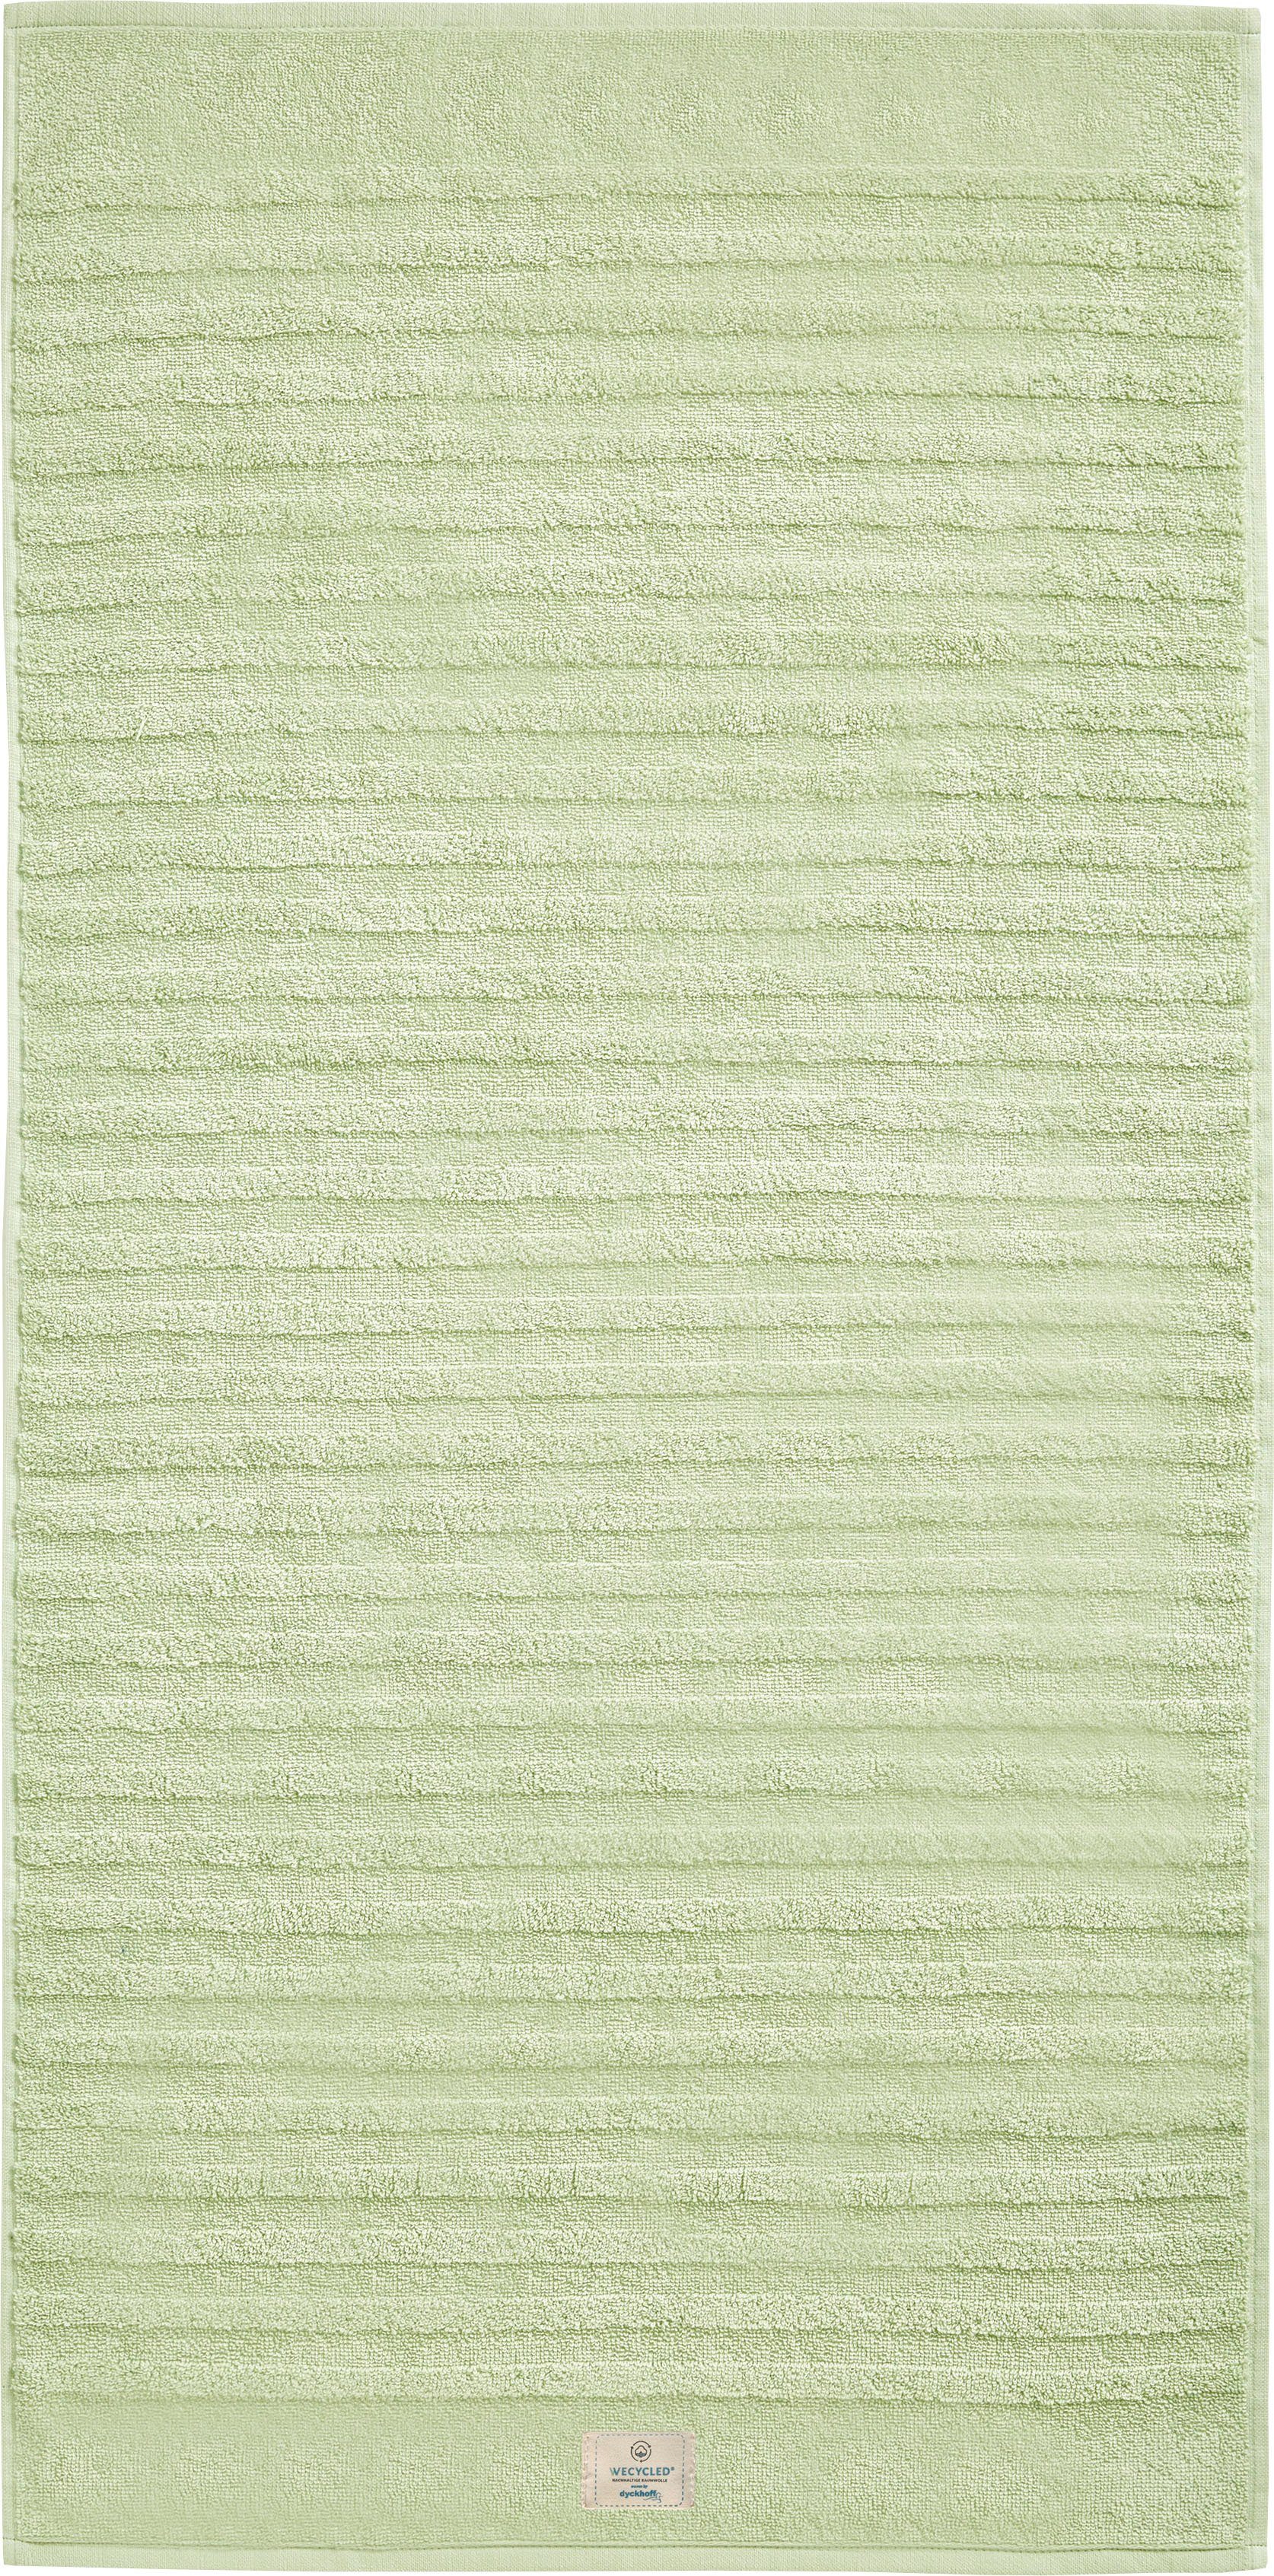 Dyckhoff Handtuch Set Wecycled, Walkfrottier, (3-tlg), aus zertifizierter Bio-Baumwolle seegrün | Handtuch-Sets